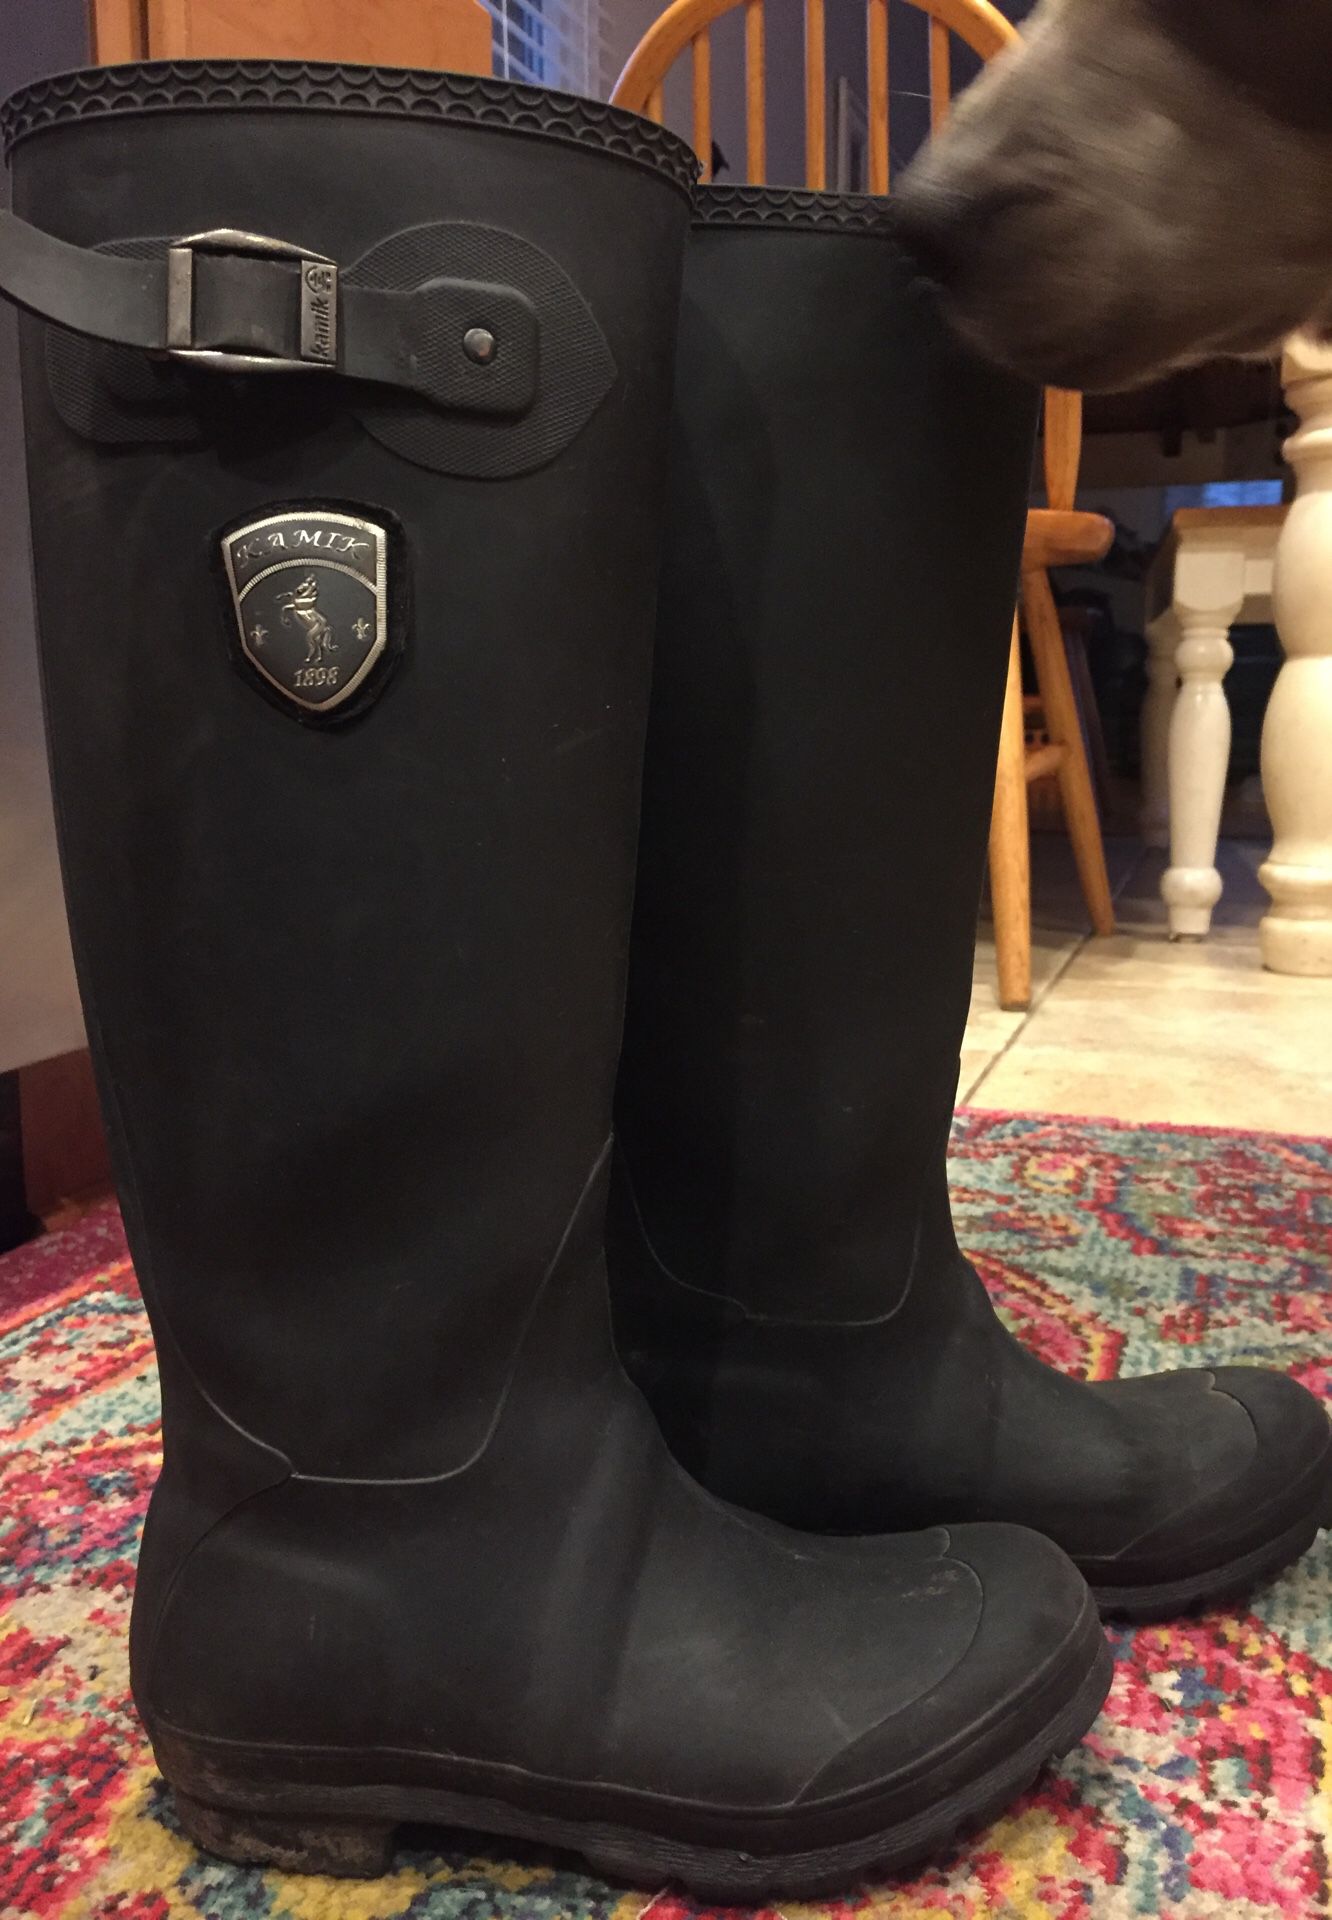 Women’s KAMIK rubber boots size 6